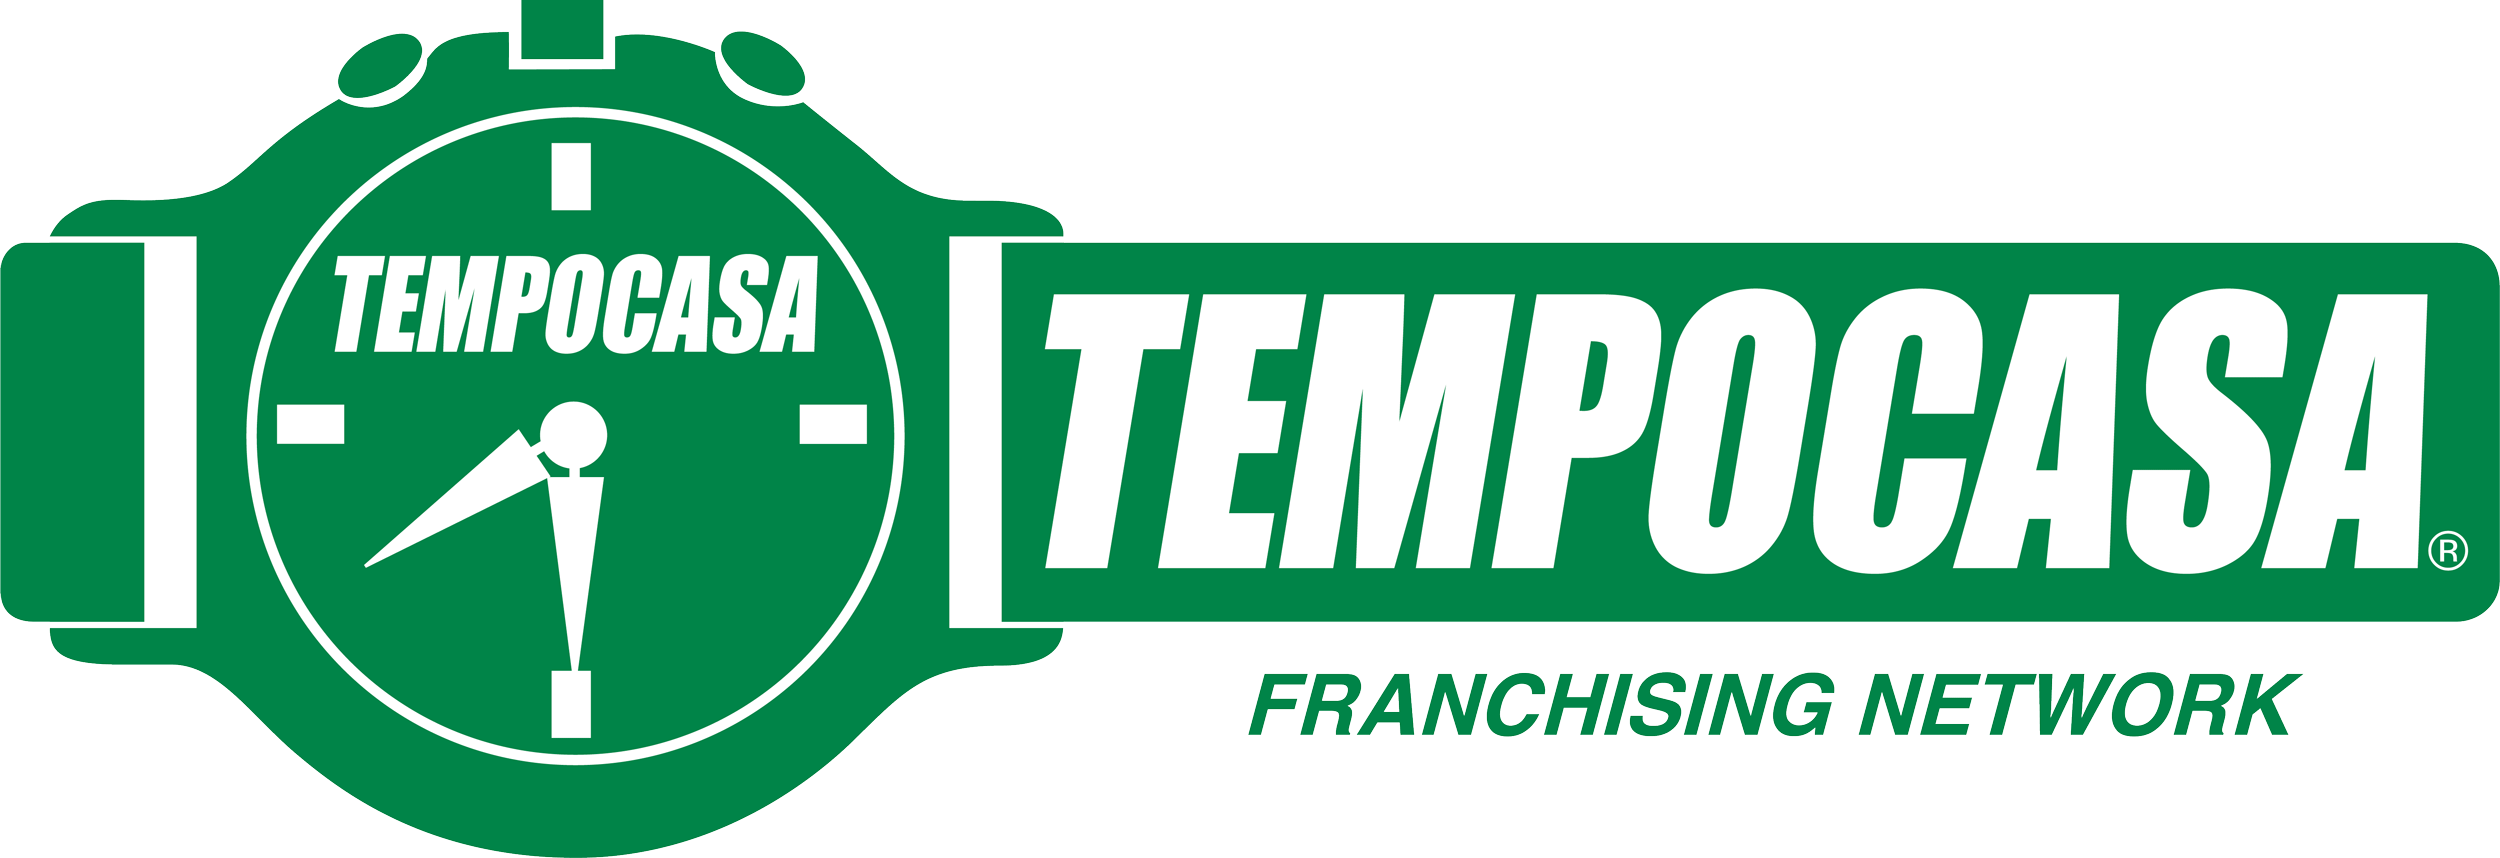 Tempocasa Tempoaffitti cologno monzese/brugherio - Tempocasa